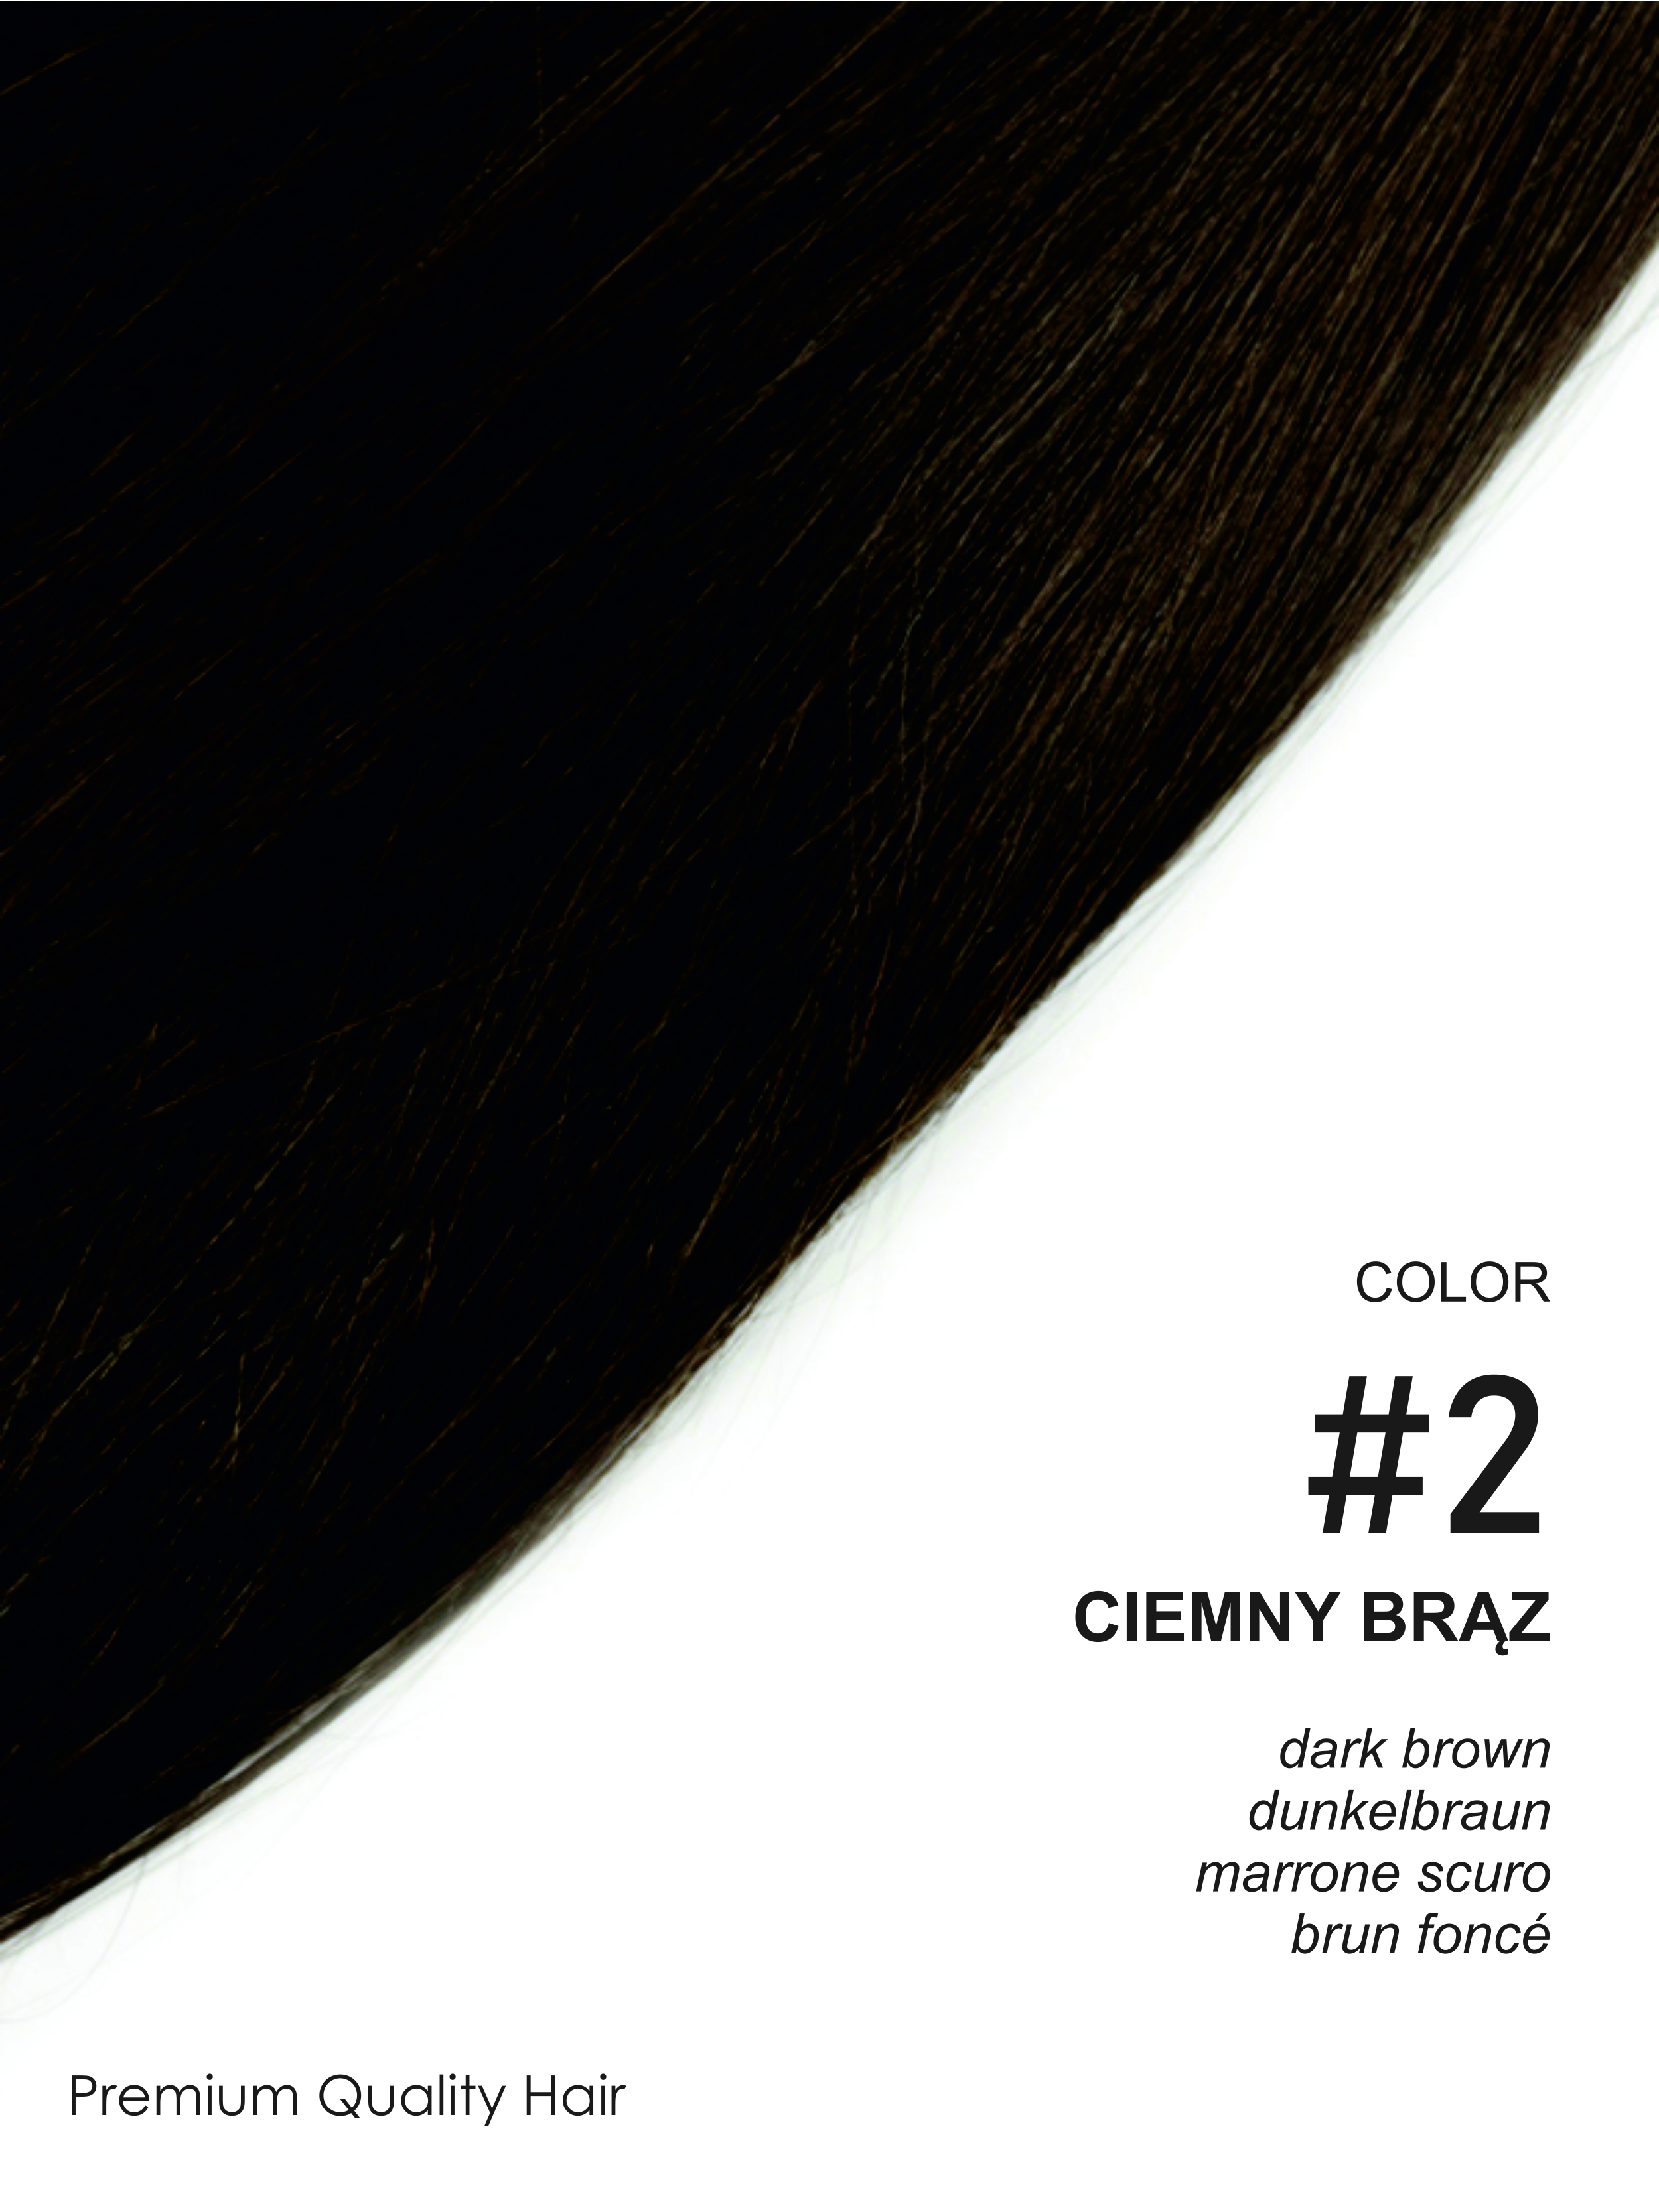 Beauty for You Slovanské vlasy - rovné prameny s plochým hrotem, vlasy 40 cm, pro keratinovou nebo ultrazvukovou metodu